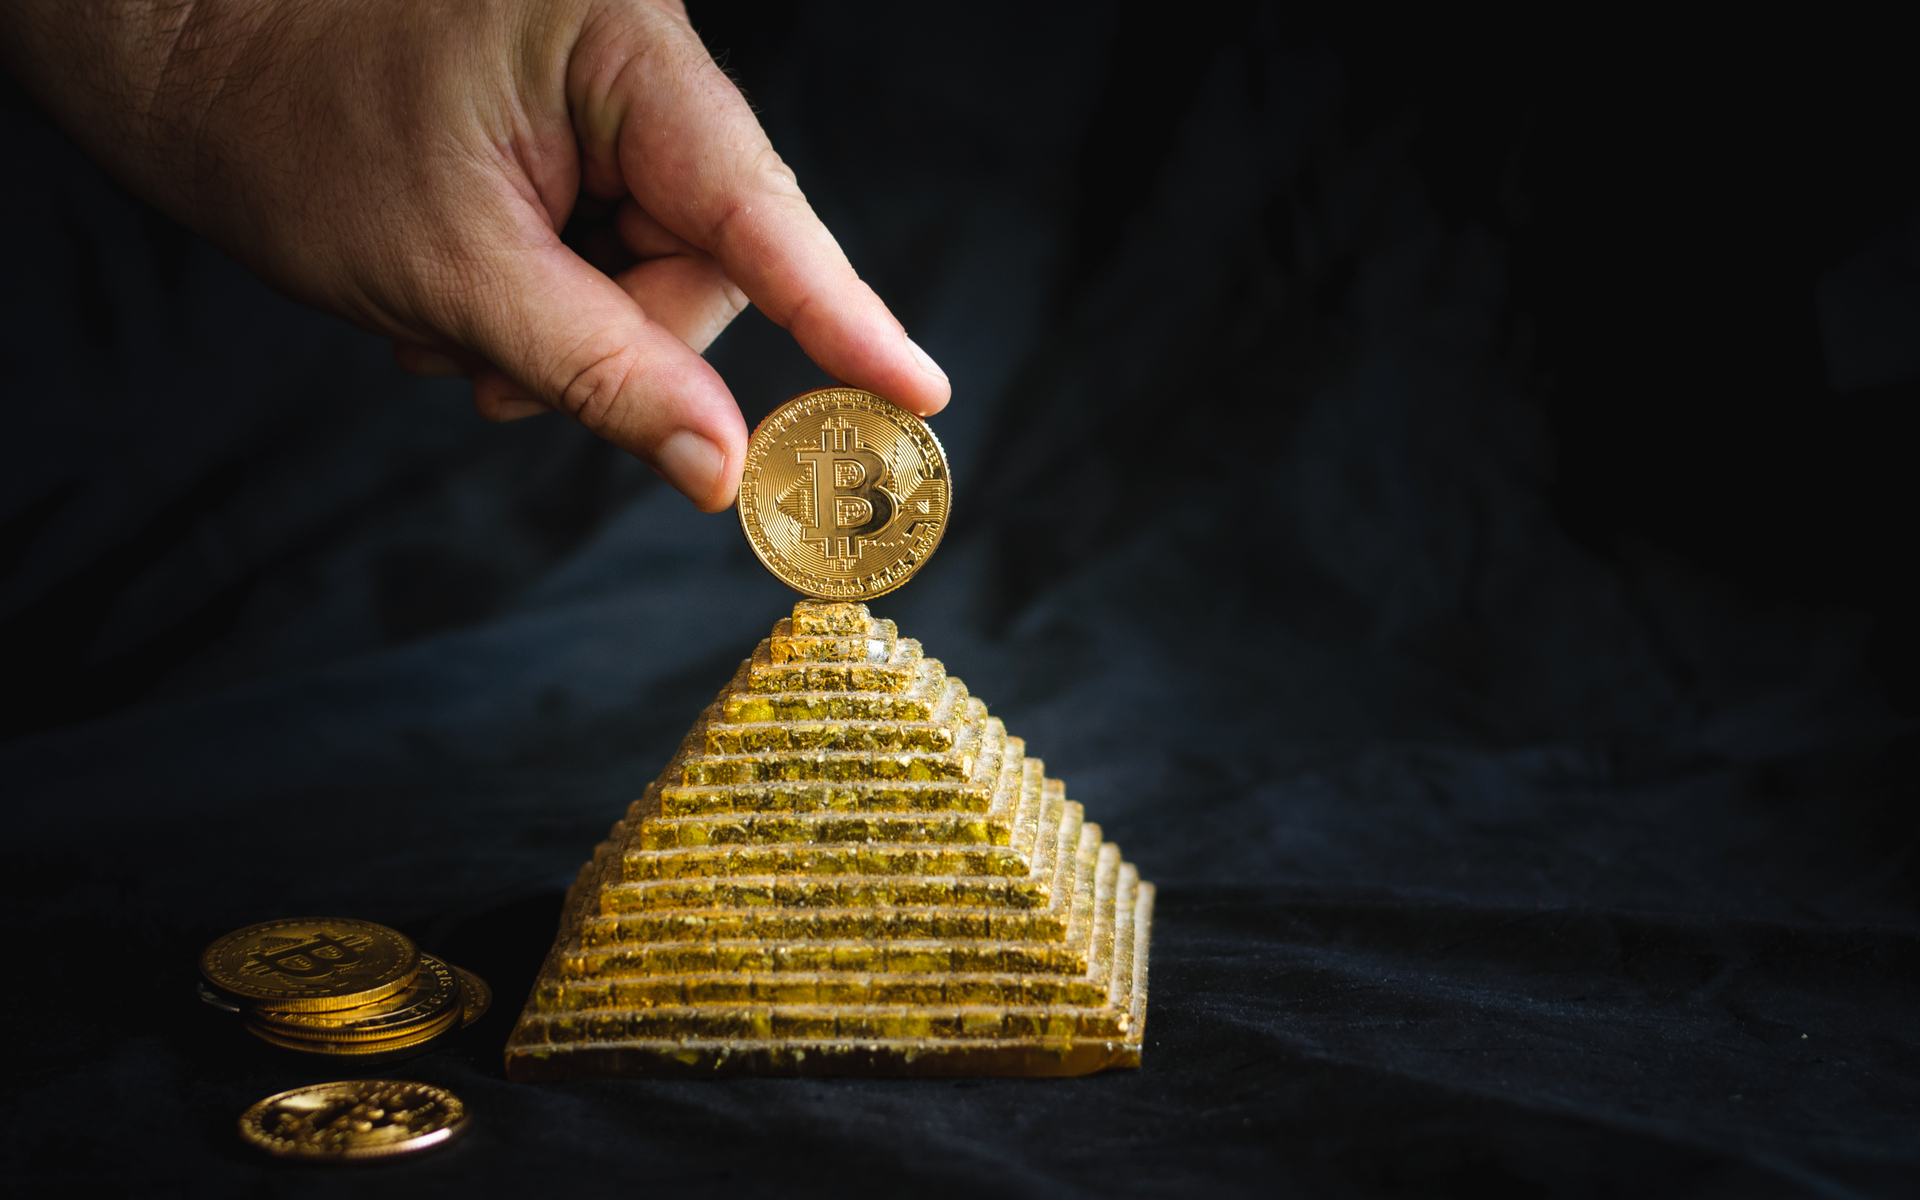 bitcoin a pyramid scheme